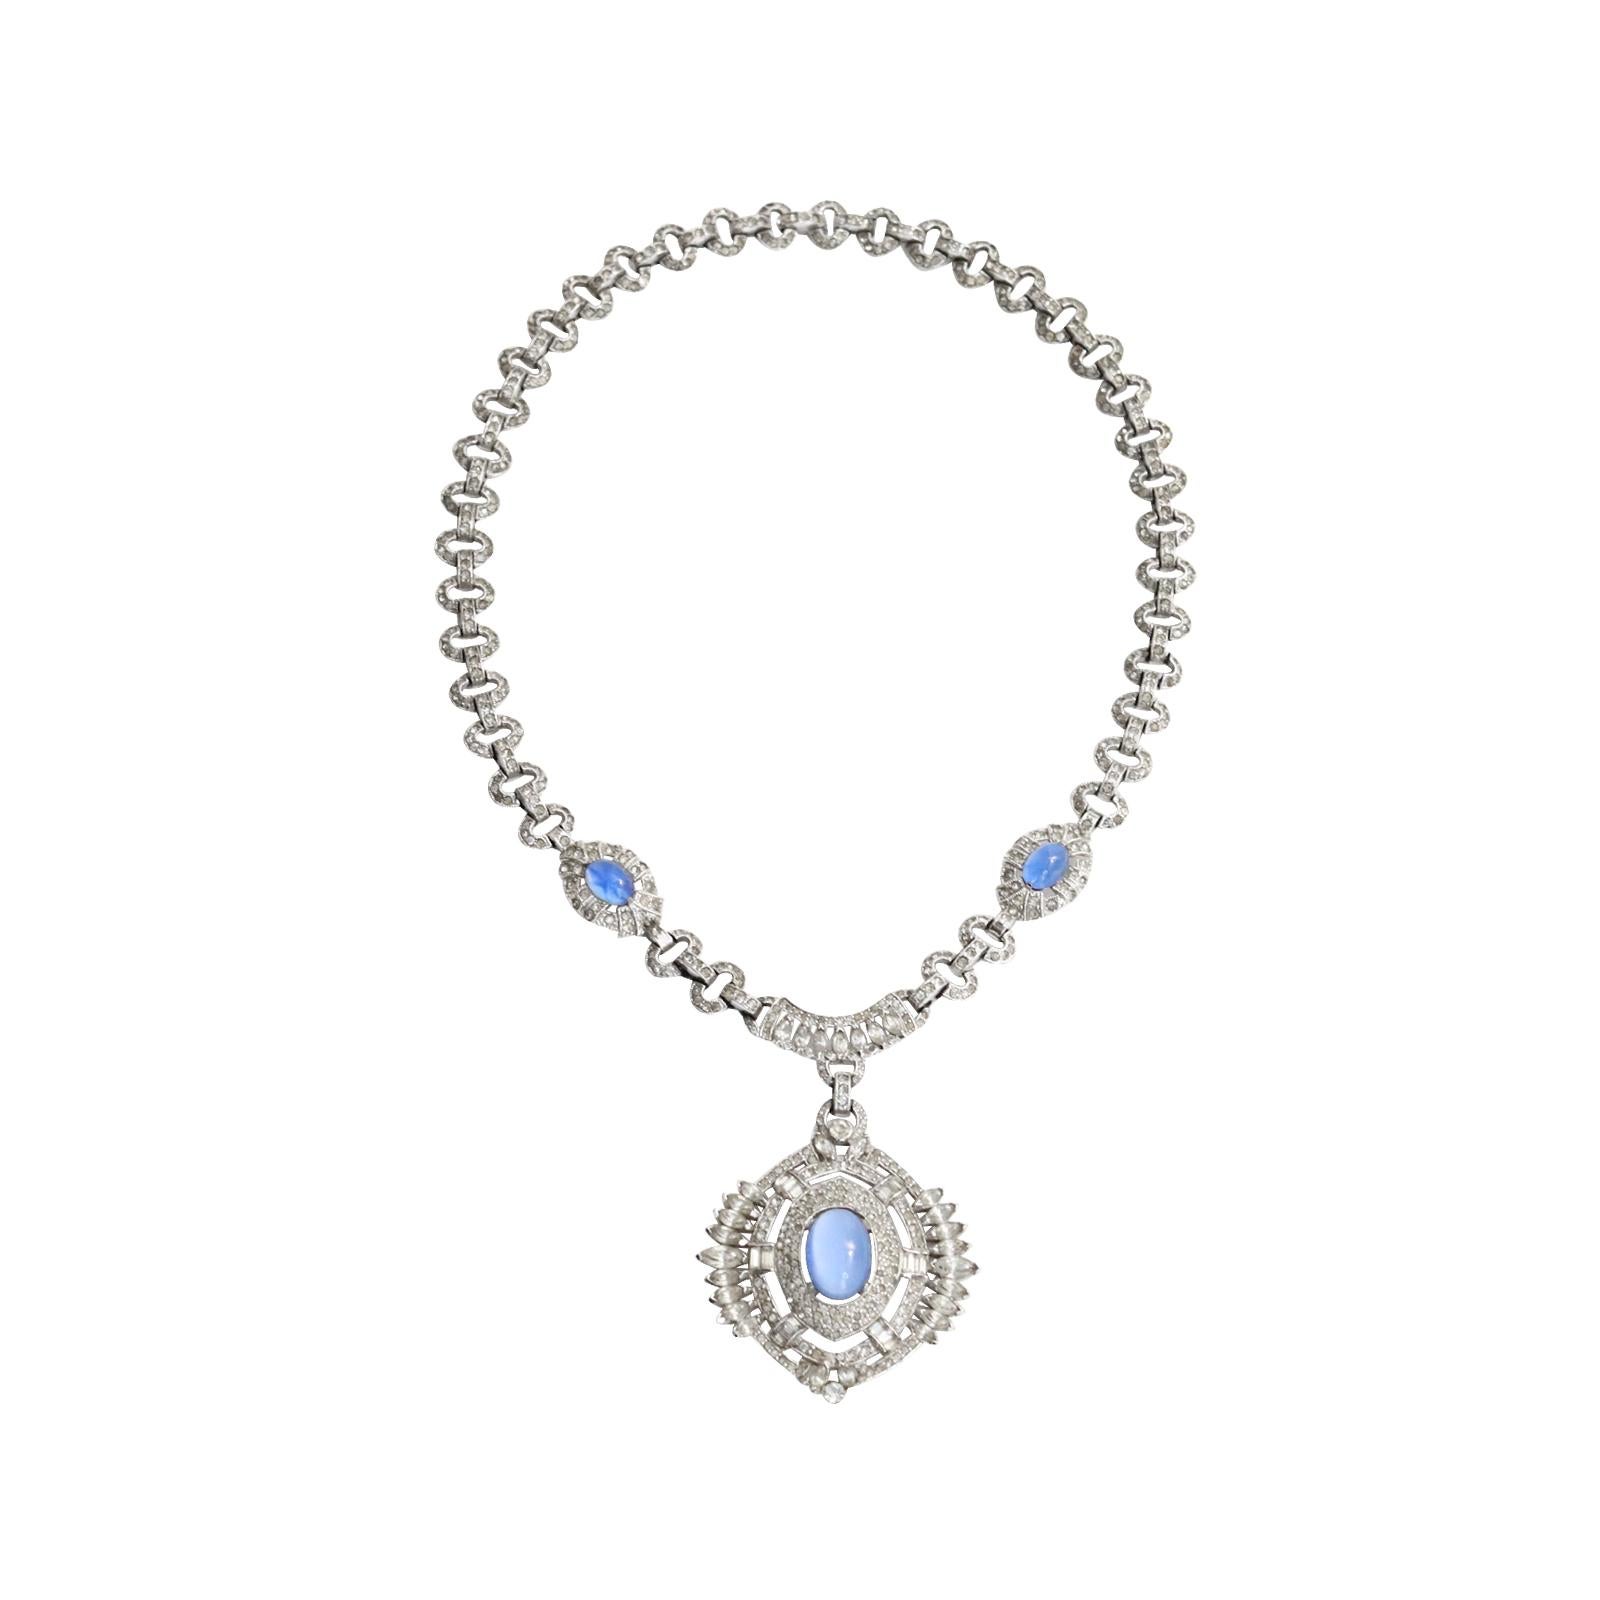 Vintage Diamanten mit blau glänzenden Cabochon Dangling Anhänger Halskette CIRCA 1960er Jahre. Diese Gorgeous Stück hat al verschiedene Schliffe von Steinen einschließlich Pflaster, und Birne und hat dann drei blauen glänzenden Cabochons, die in